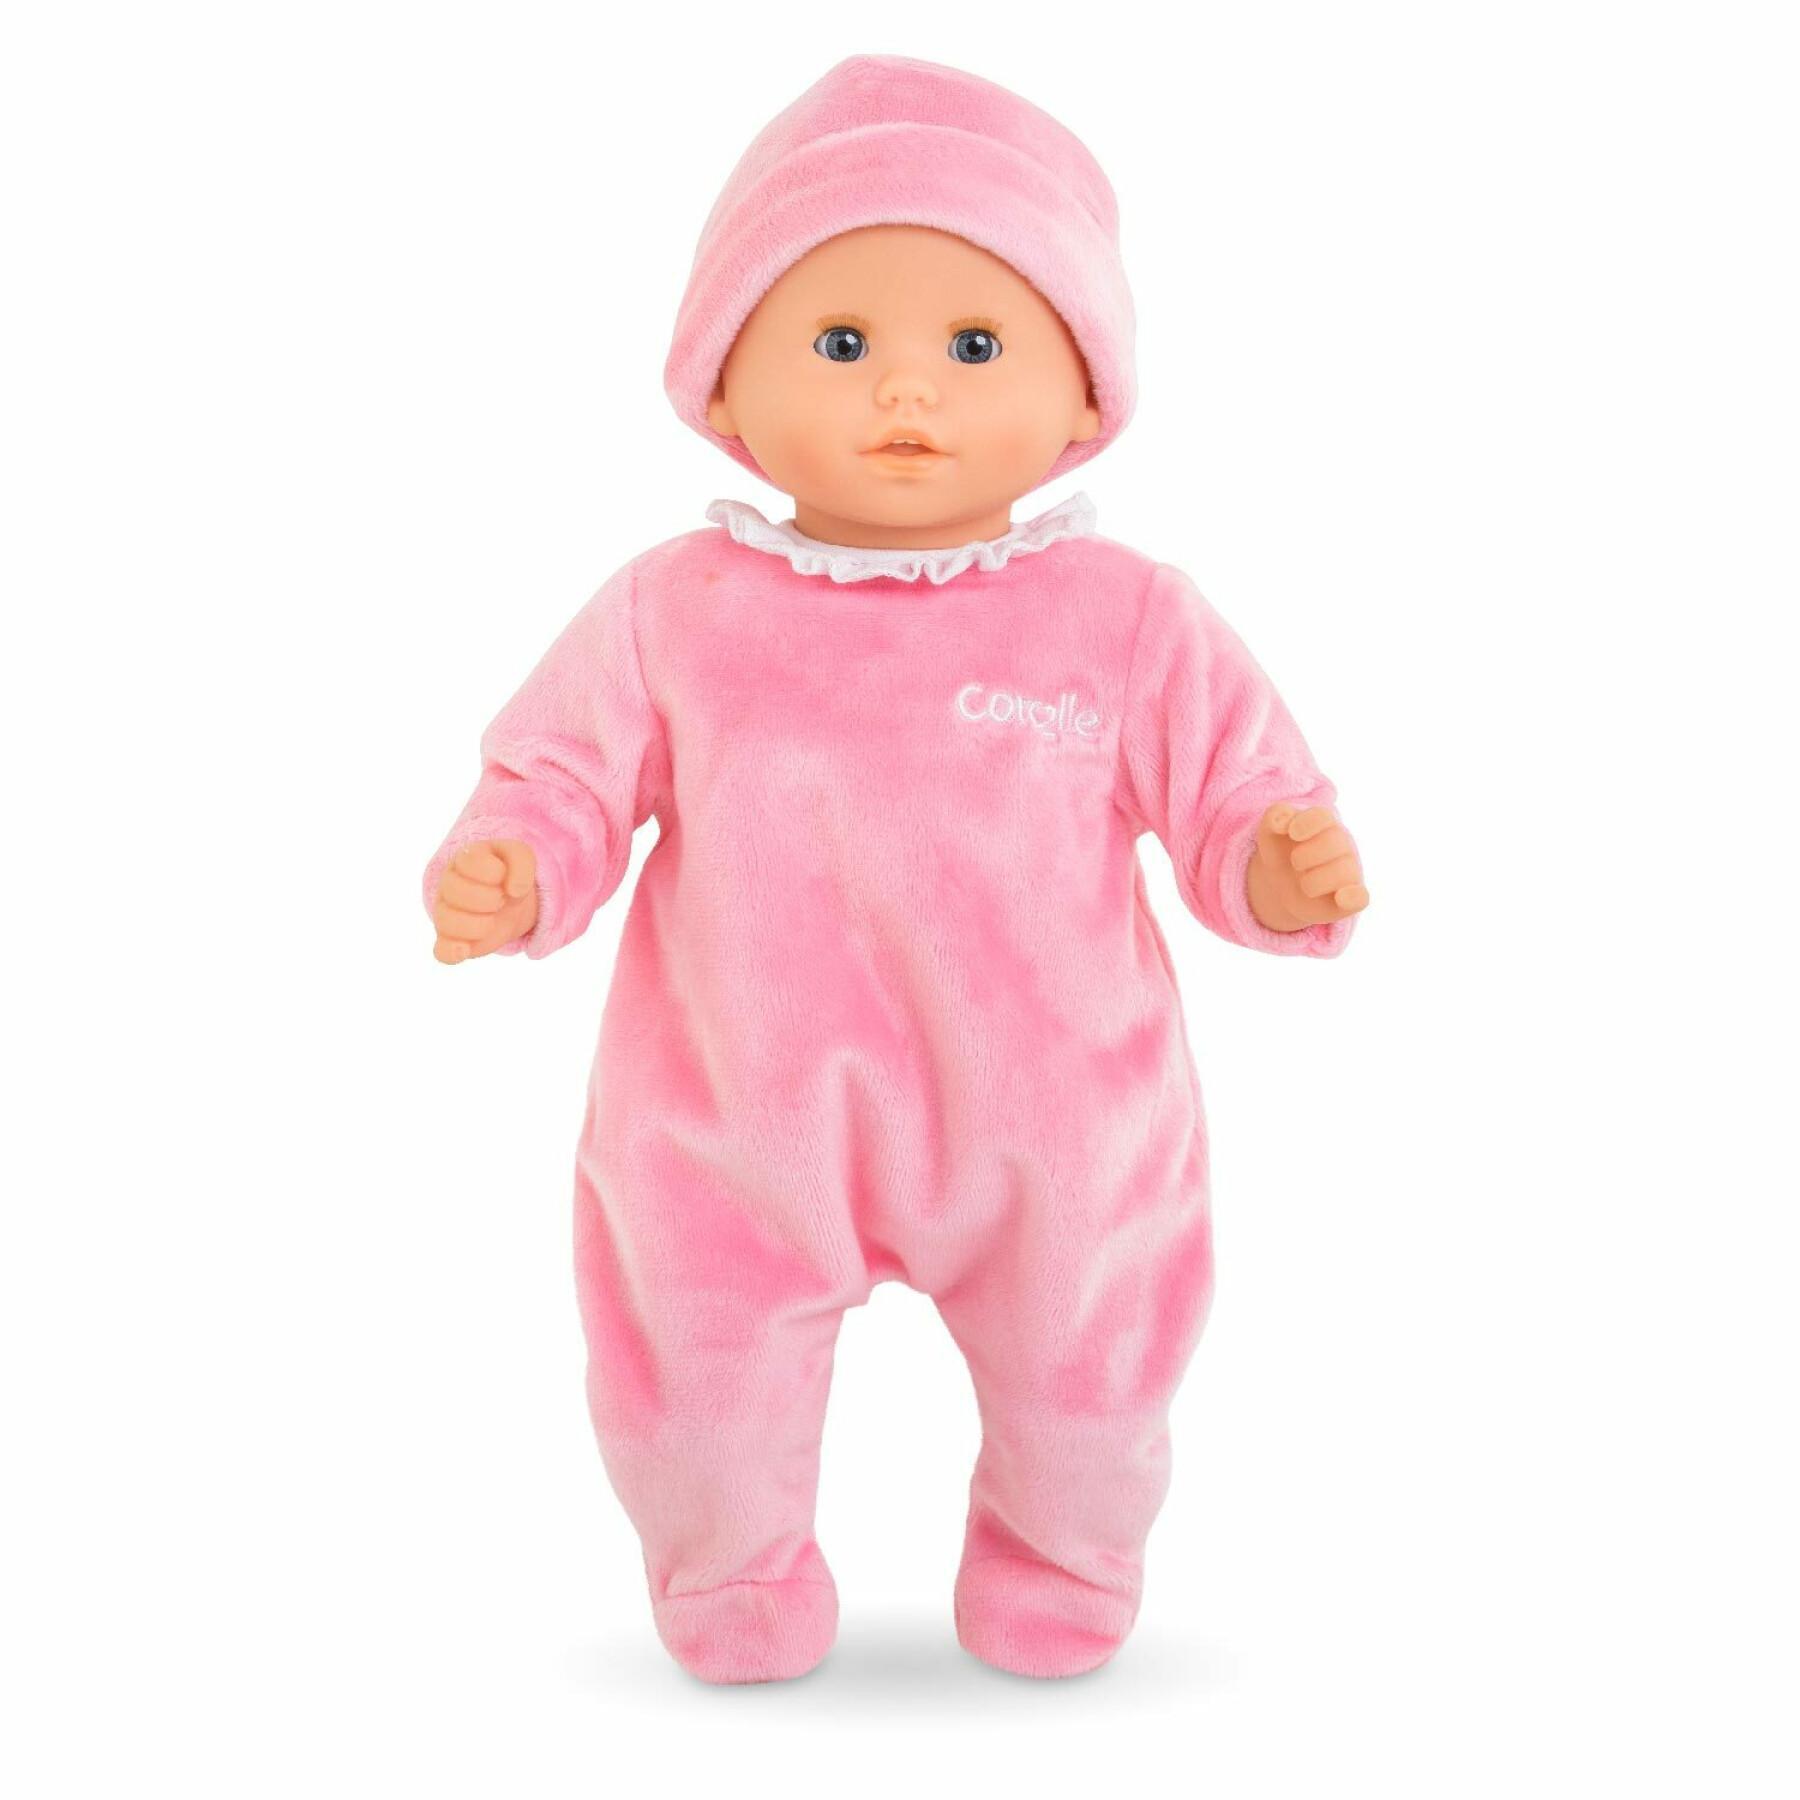 Pijama y gorro para el bebé Corolle